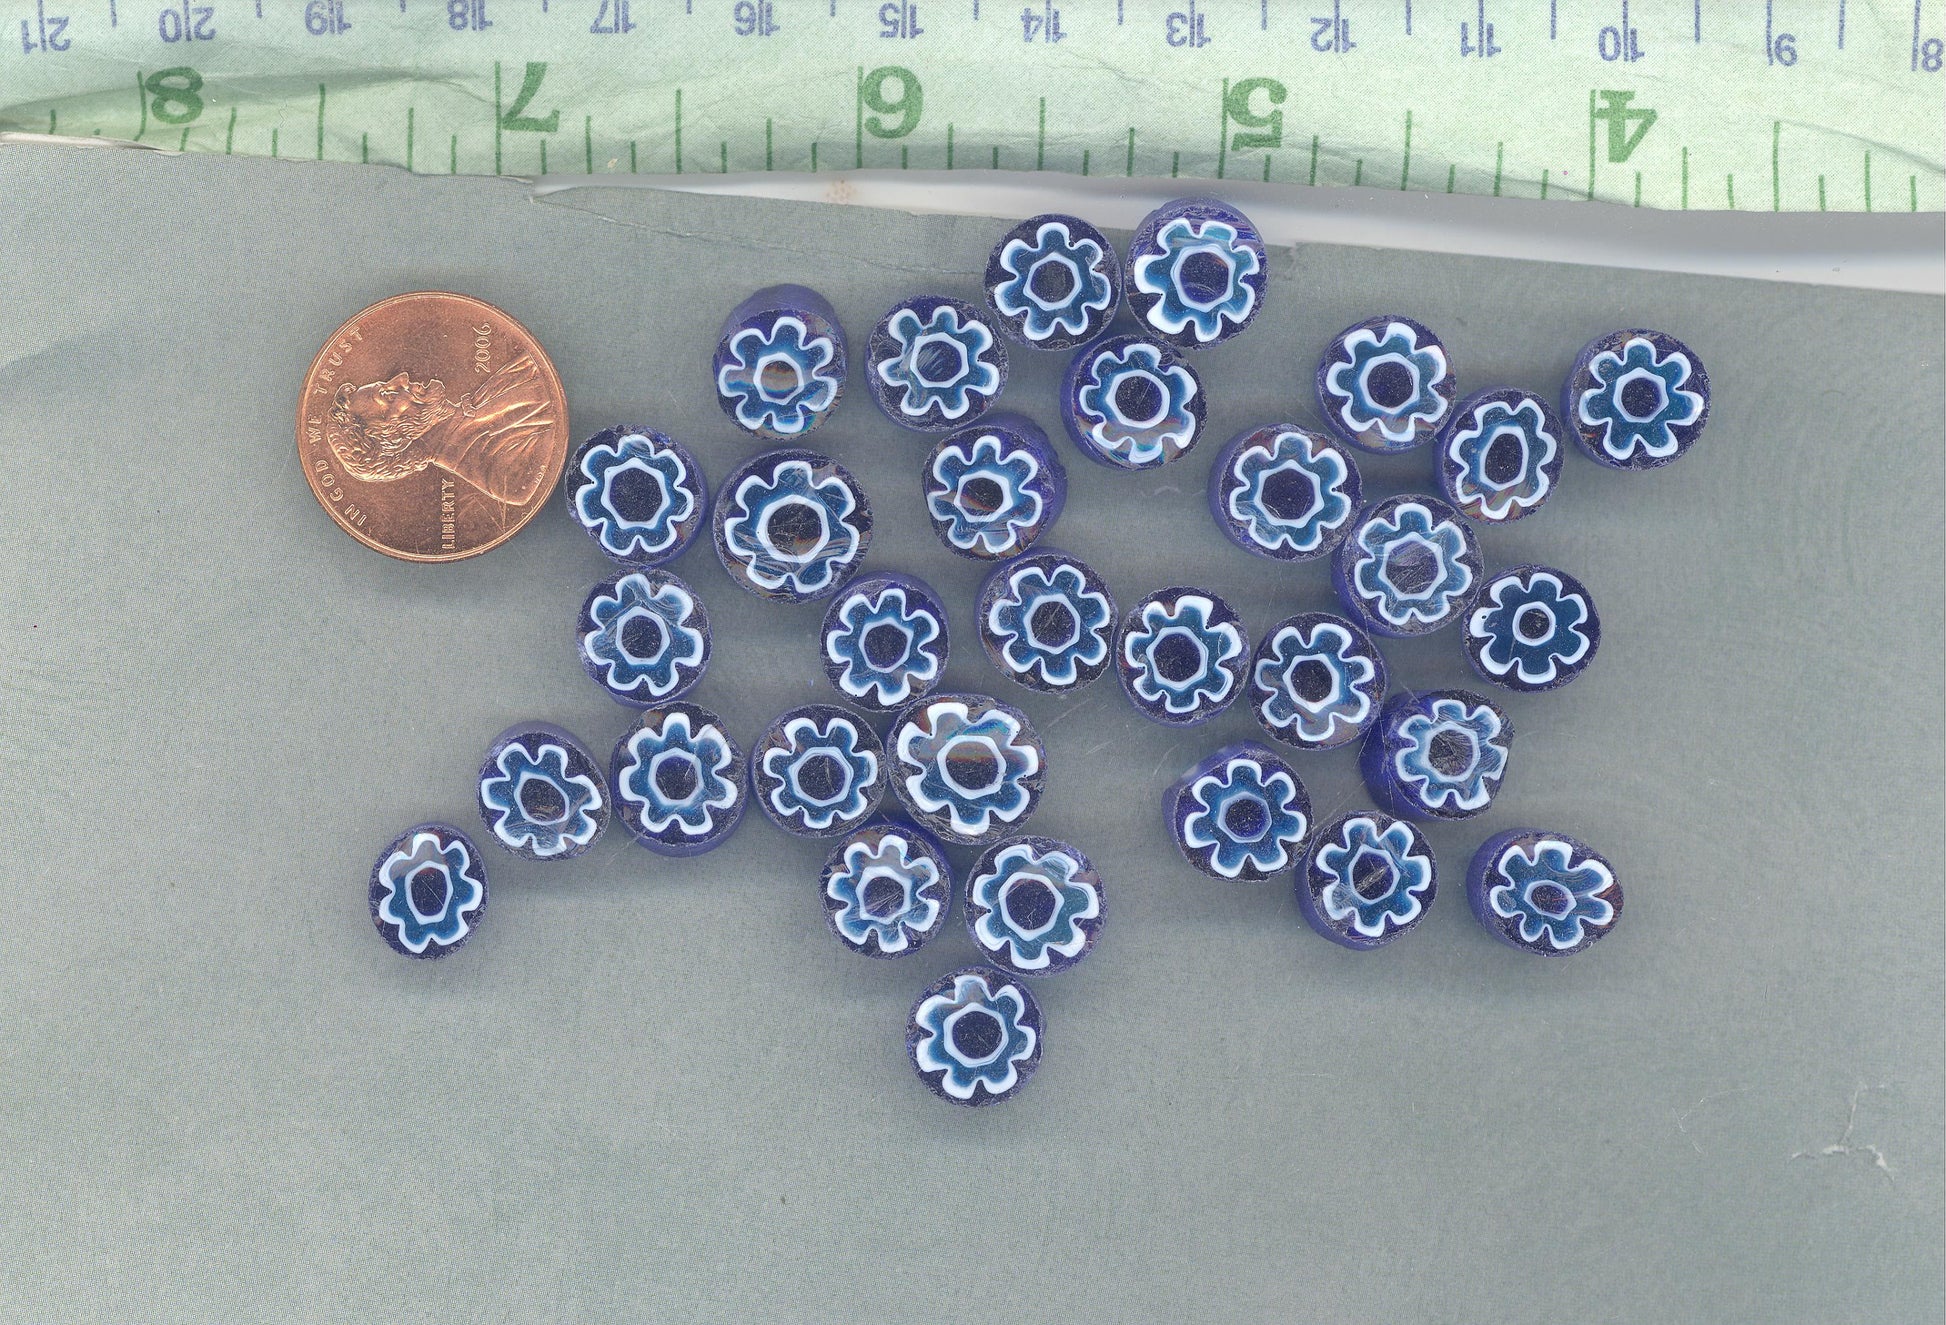 Light Blue Flowers in Deep Blue Millefiori - 25 grams - Unique Mosaic Glass Tiles - Floral Pattern